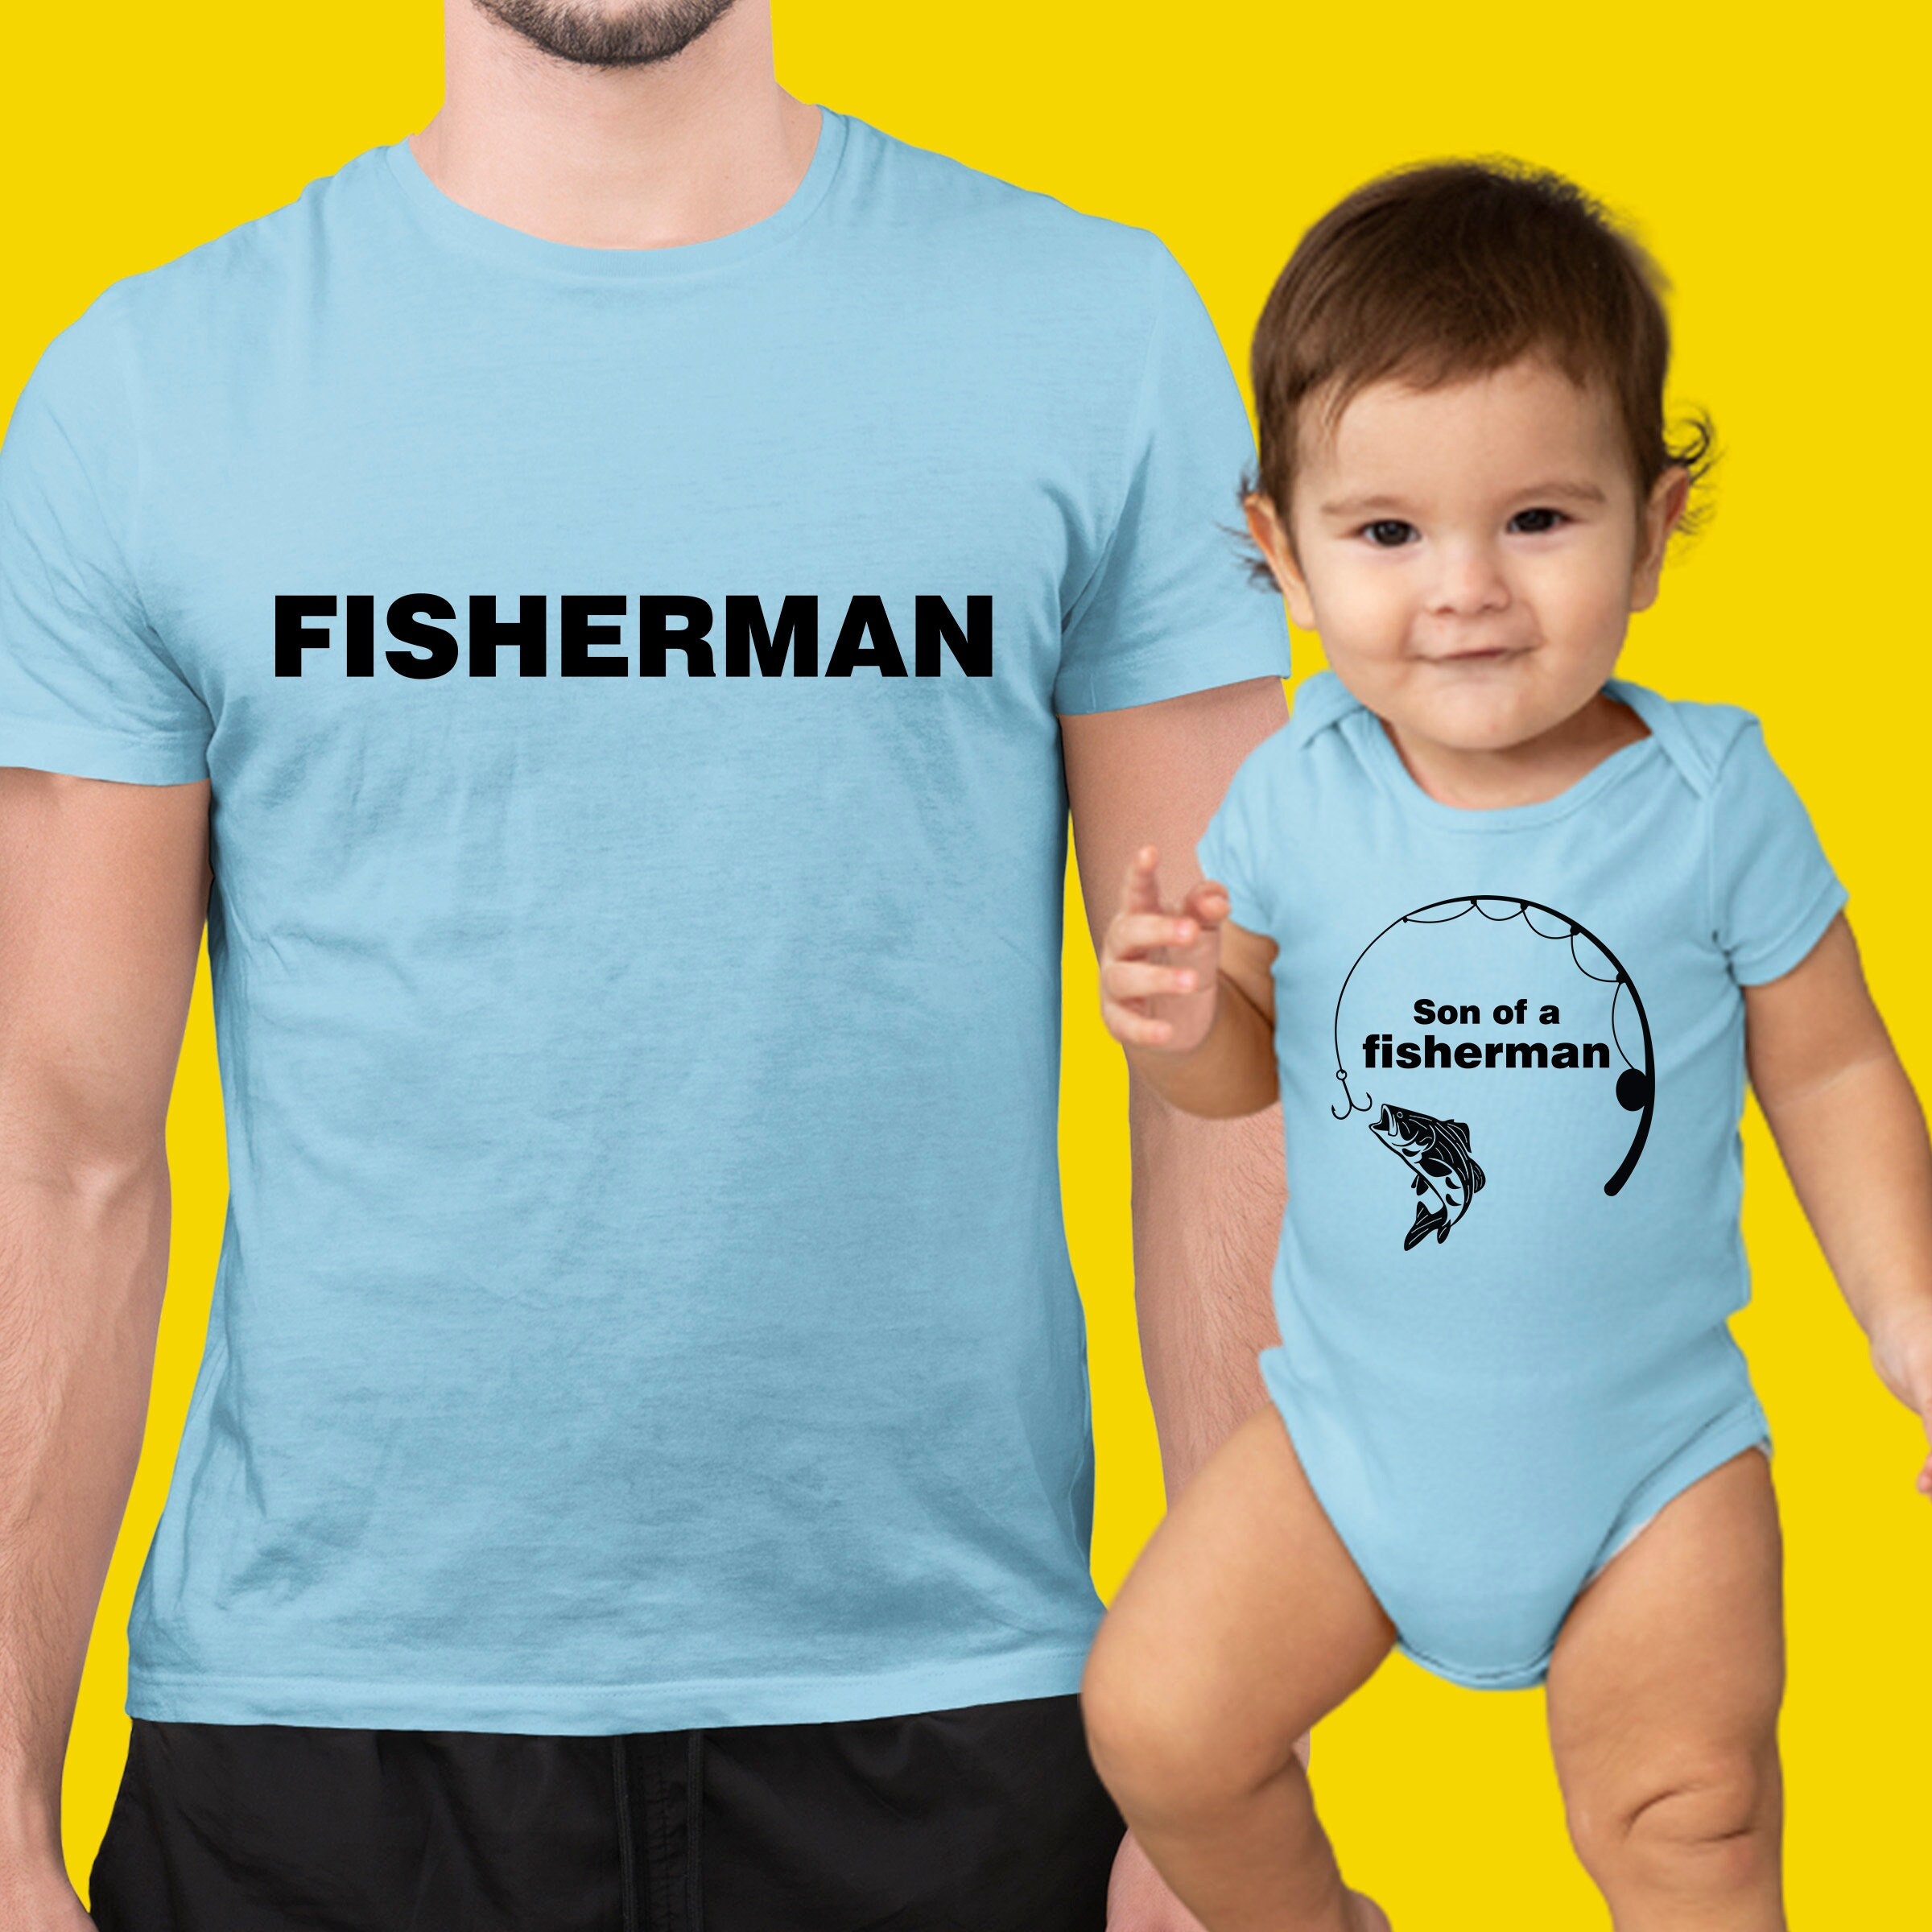 Father Son Matching Shirts Fishing -  Australia